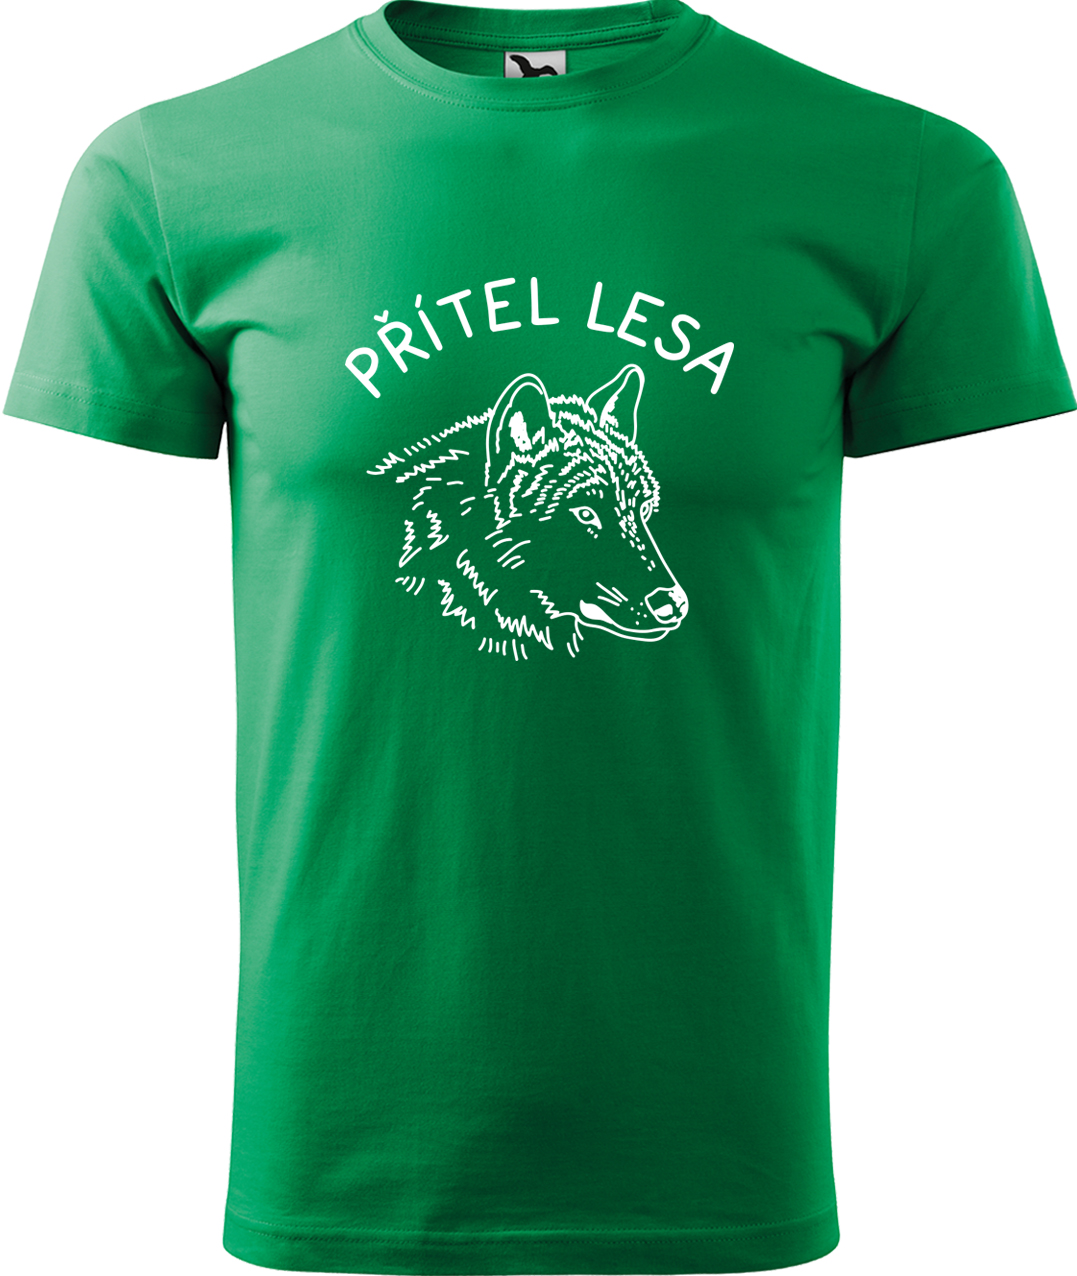 Pánské tričko s vlkem - Přítel lesa Velikost: L, Barva: Středně zelená (16), Střih: pánský